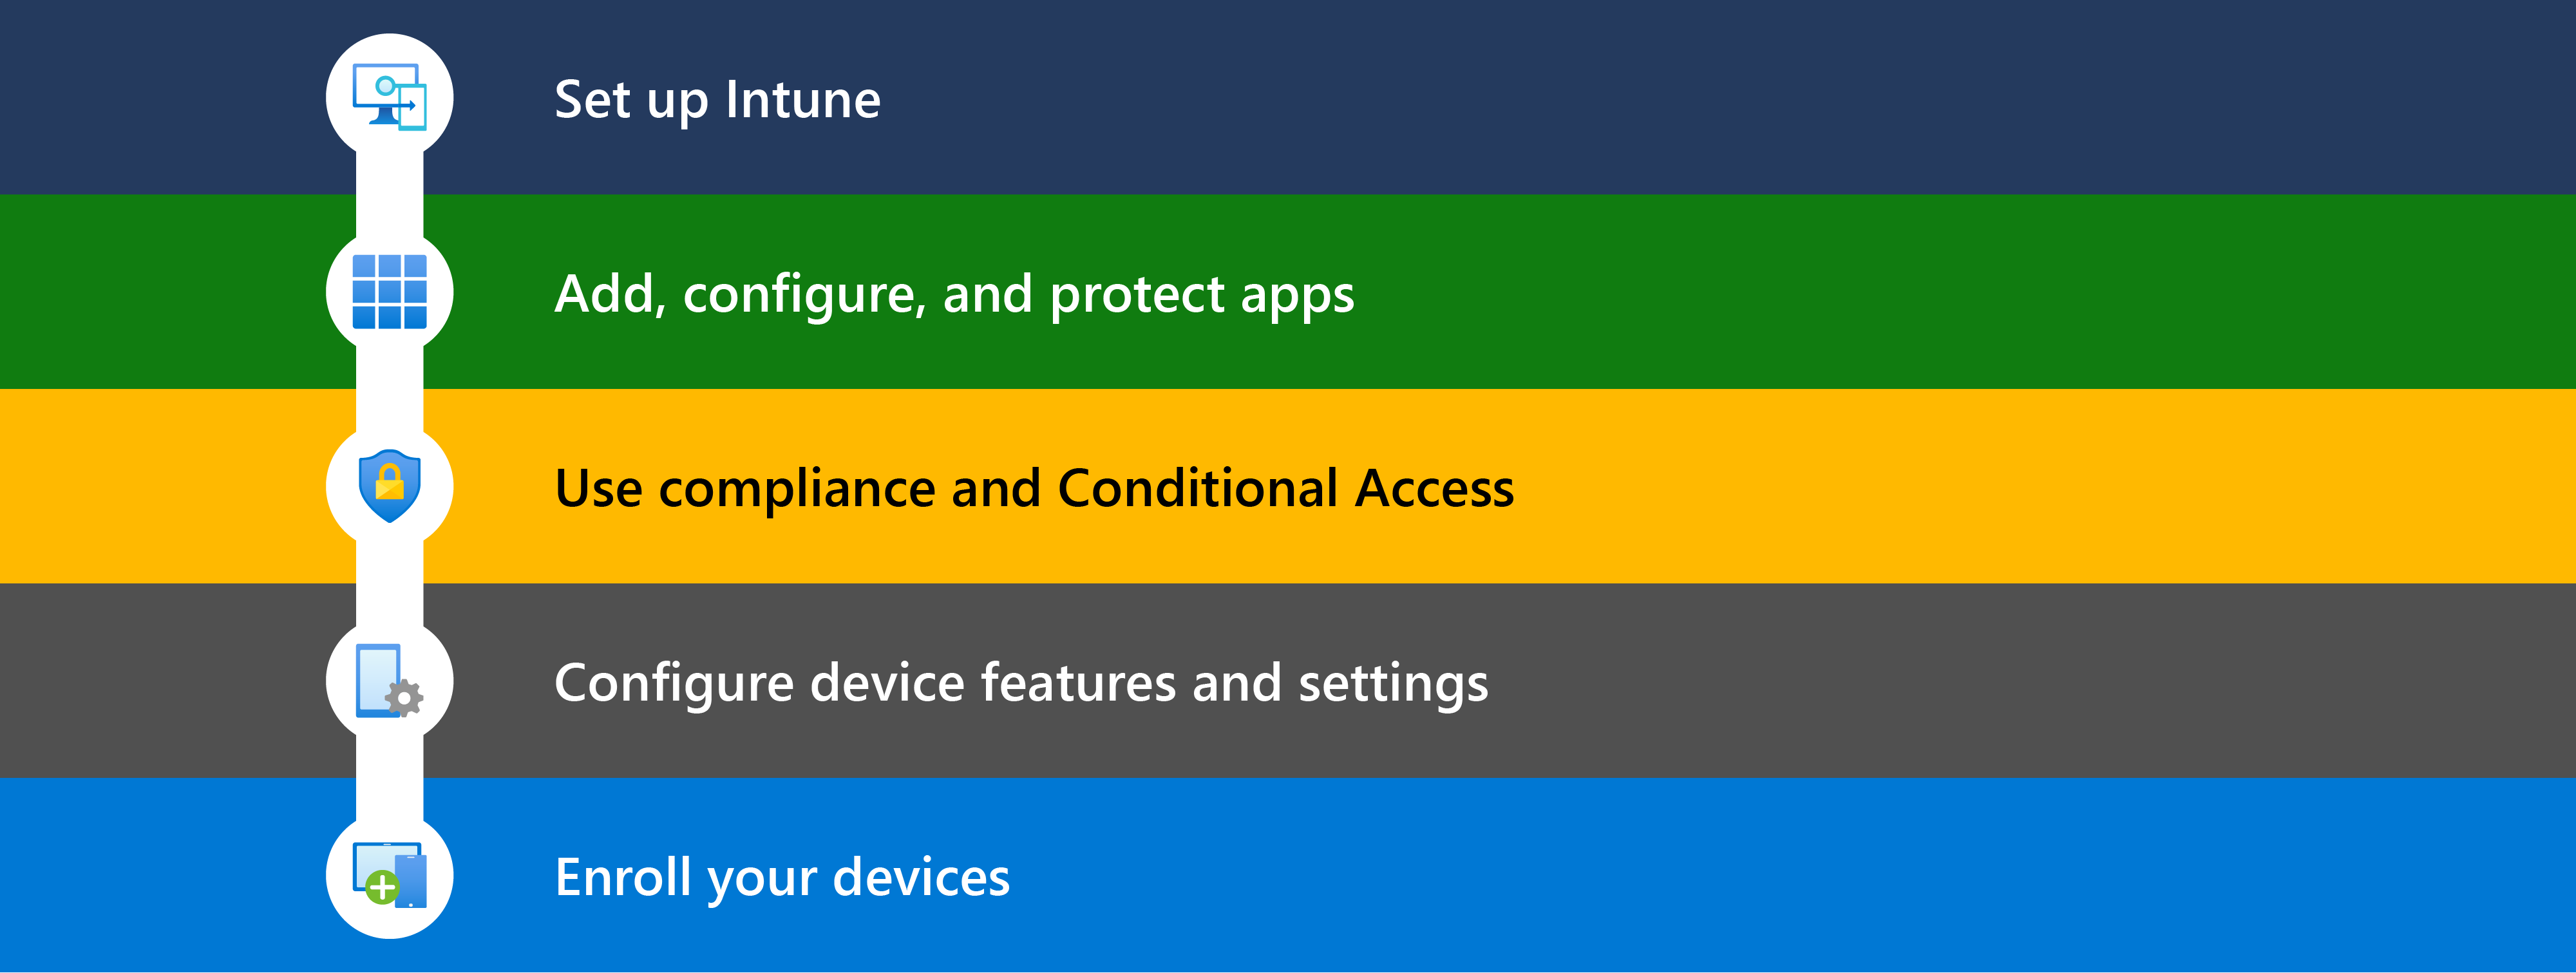 Diagramma che illustra i diversi passaggi per iniziare a usare Microsoft Intune, tra cui la configurazione, l'aggiunta di app, l'uso dell'accesso condizionale di conformità&, la configurazione delle funzionalità dei dispositivi e quindi la registrazione dei dispositivi da gestire.